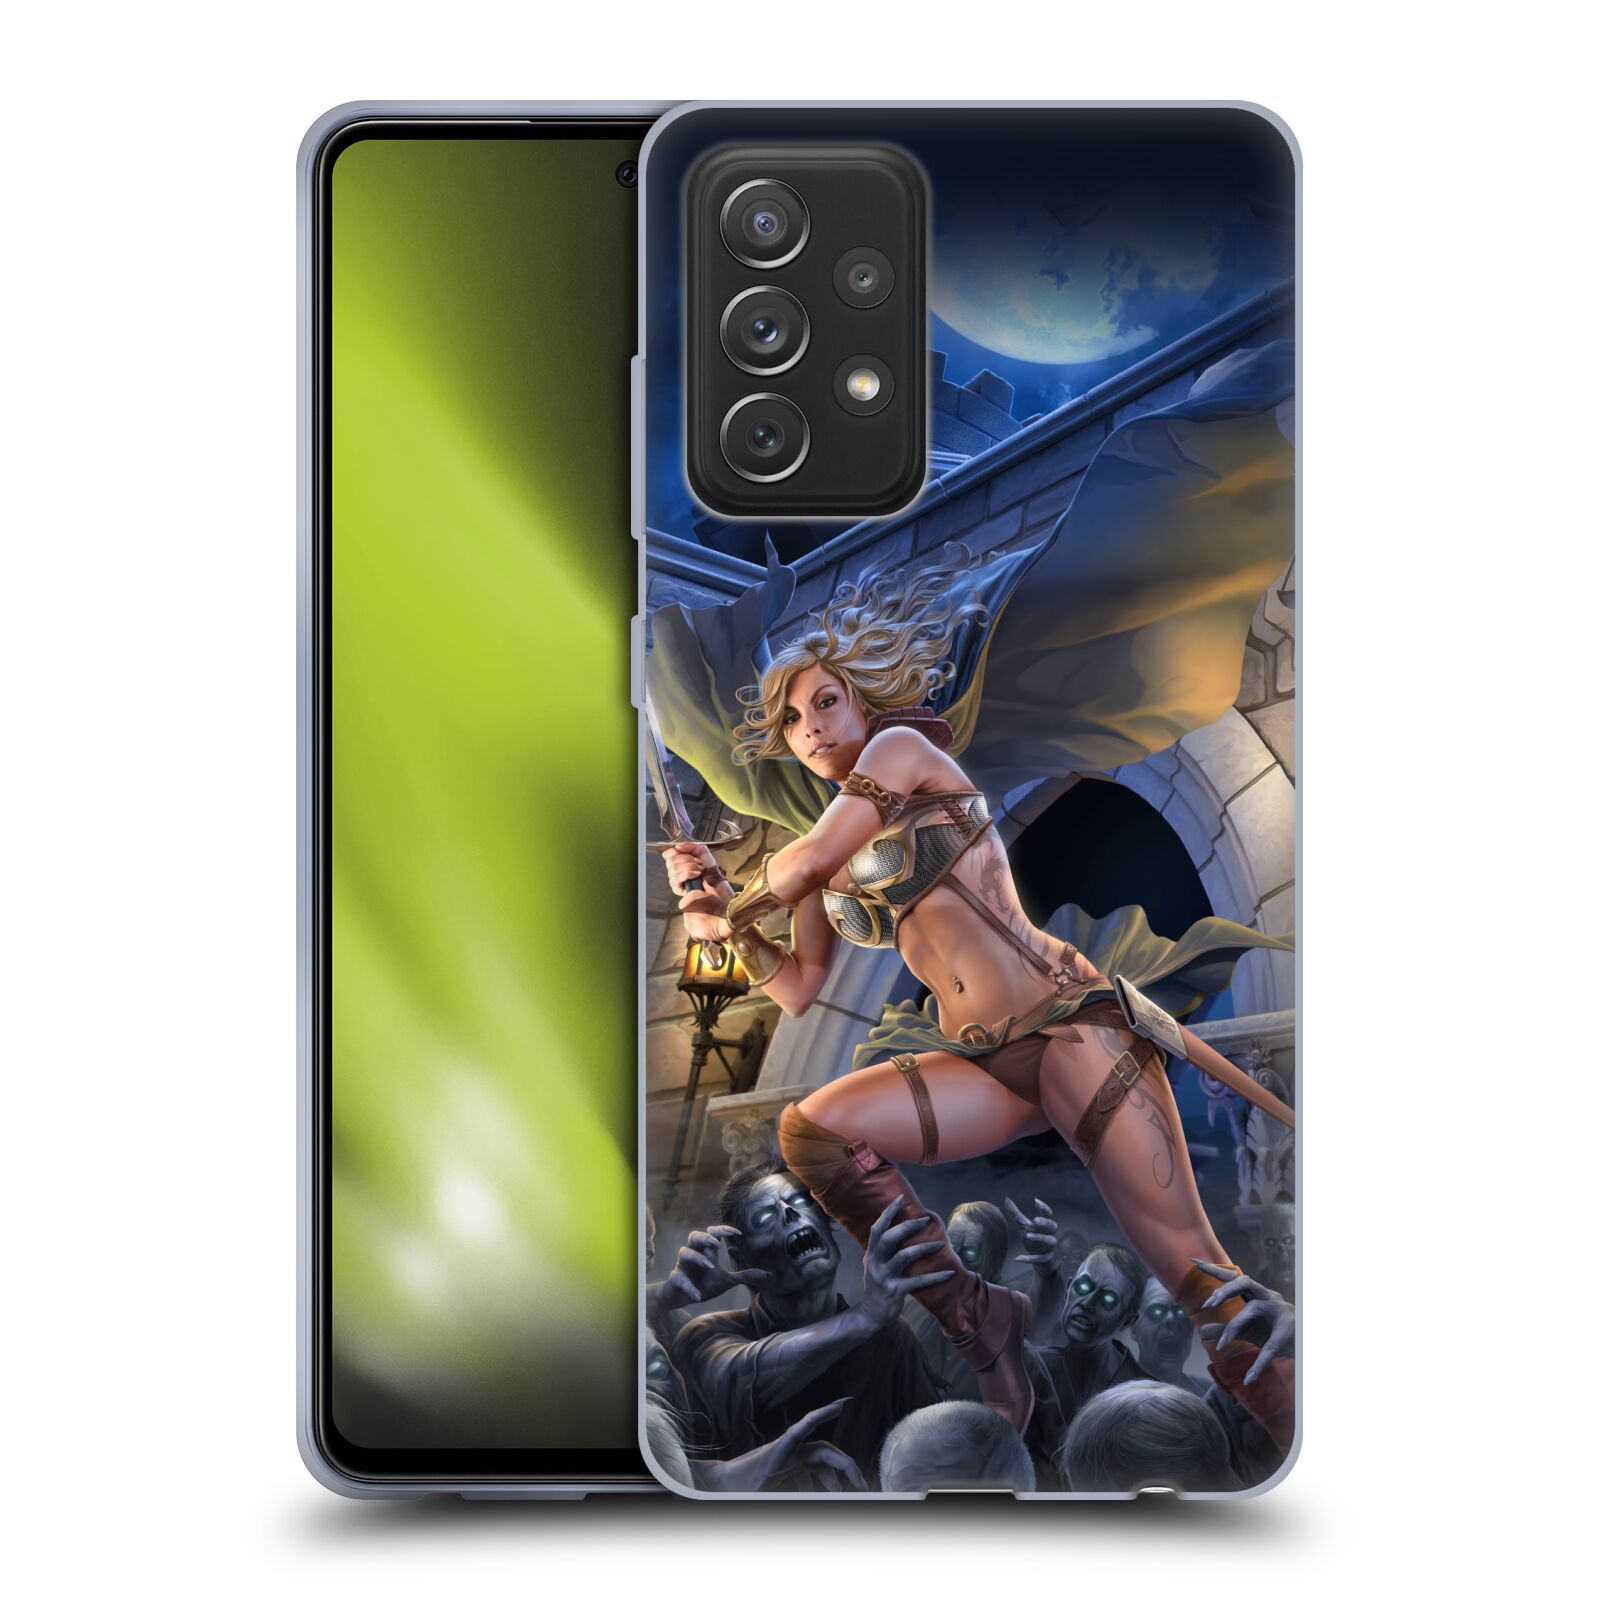 Pouzdro na mobil Samsung Galaxy A72 / A72 5G - HEAD CASE - Fantasy kresby Tom Wood - Princezna bojovnice a zombies